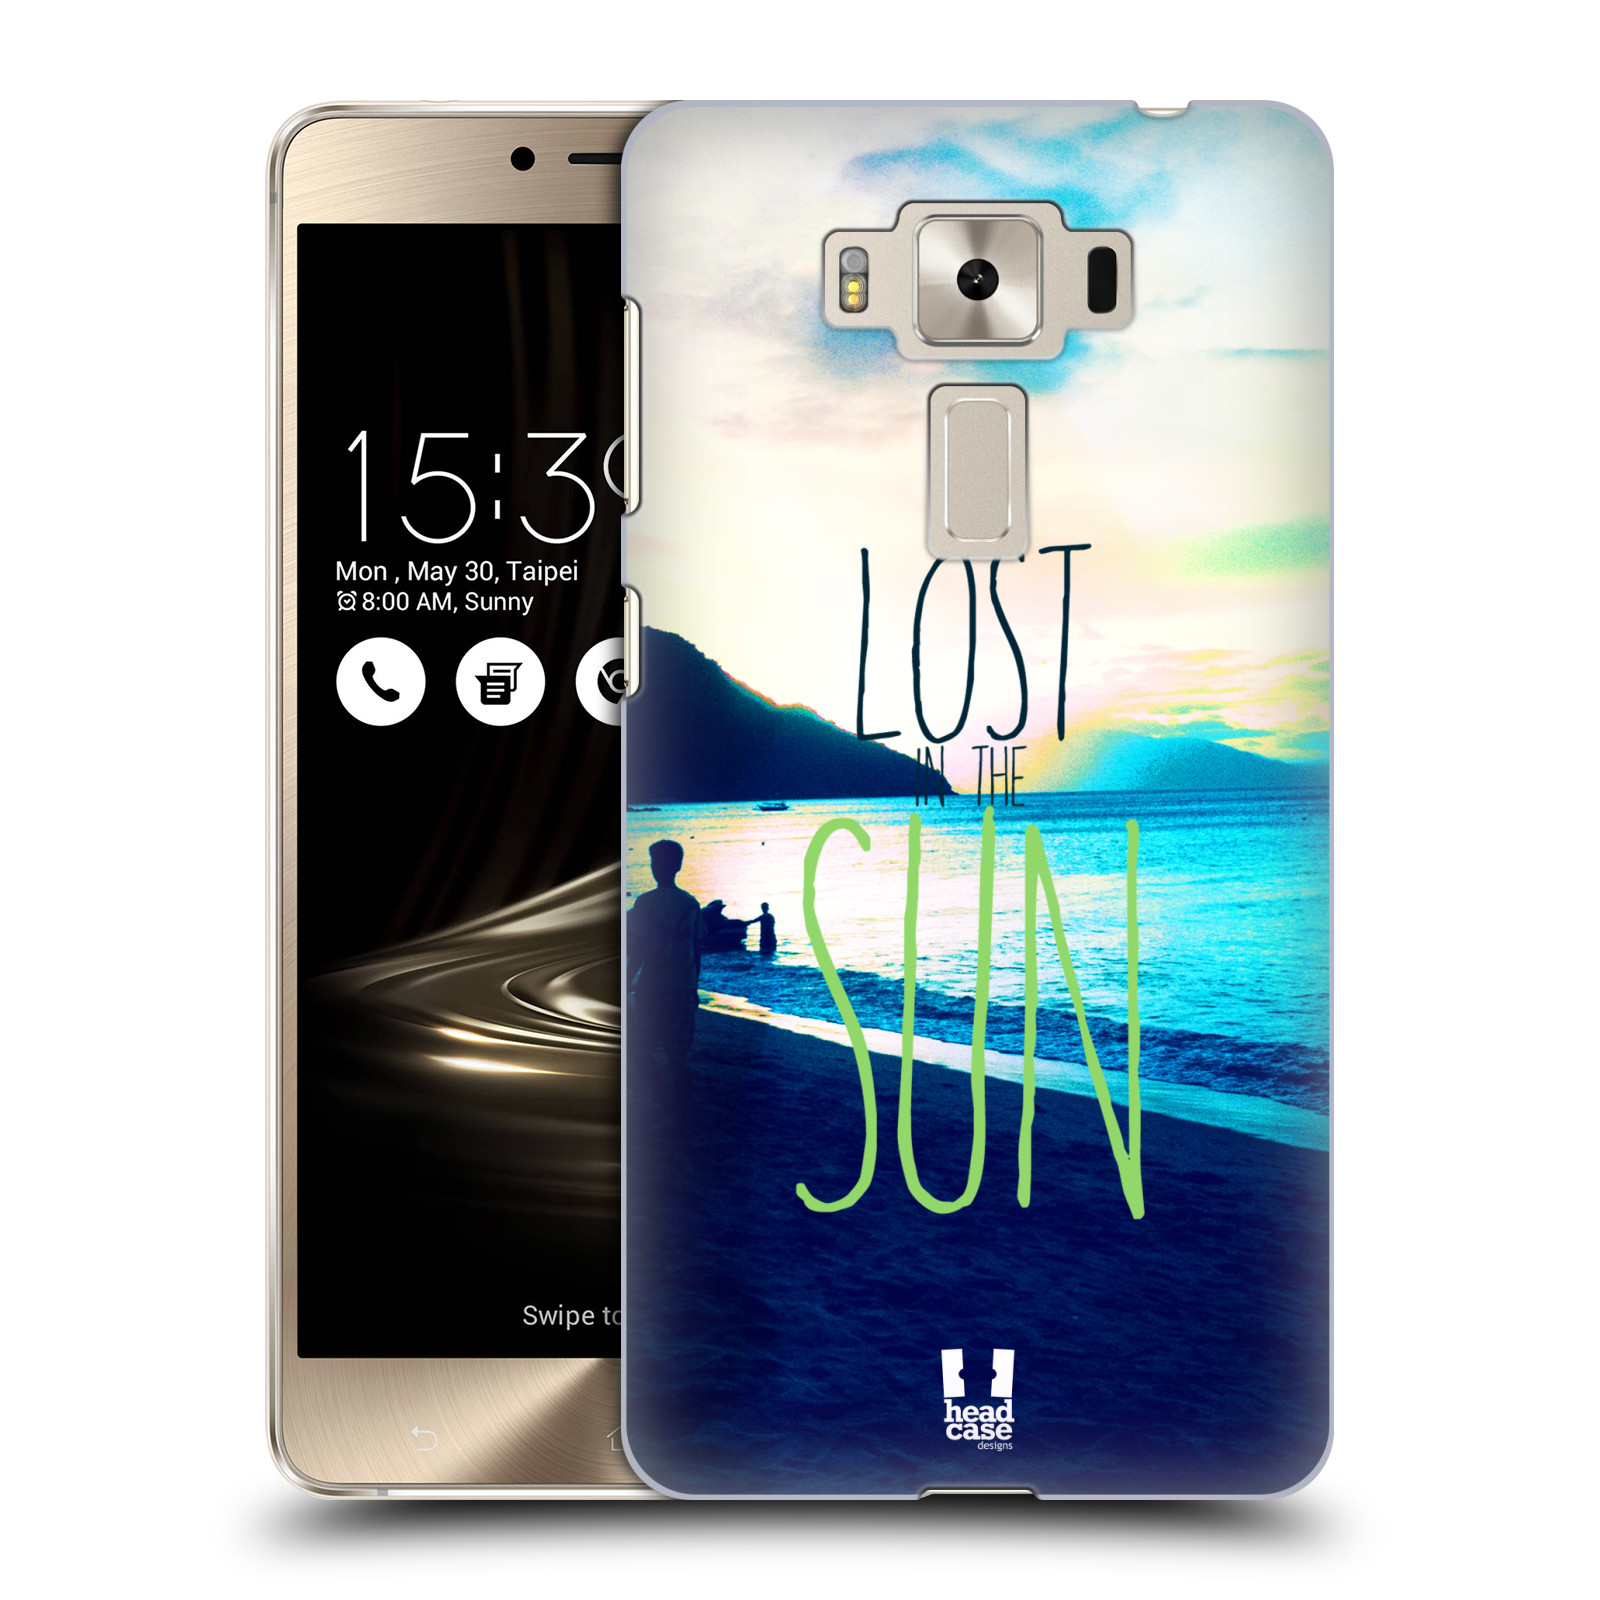 HEAD CASE plastový obal na mobil Asus Zenfone 3 DELUXE ZS550KL vzor Pozitivní vlny MODRÁ, moře, slunce a pláž LOST IN THE SUN